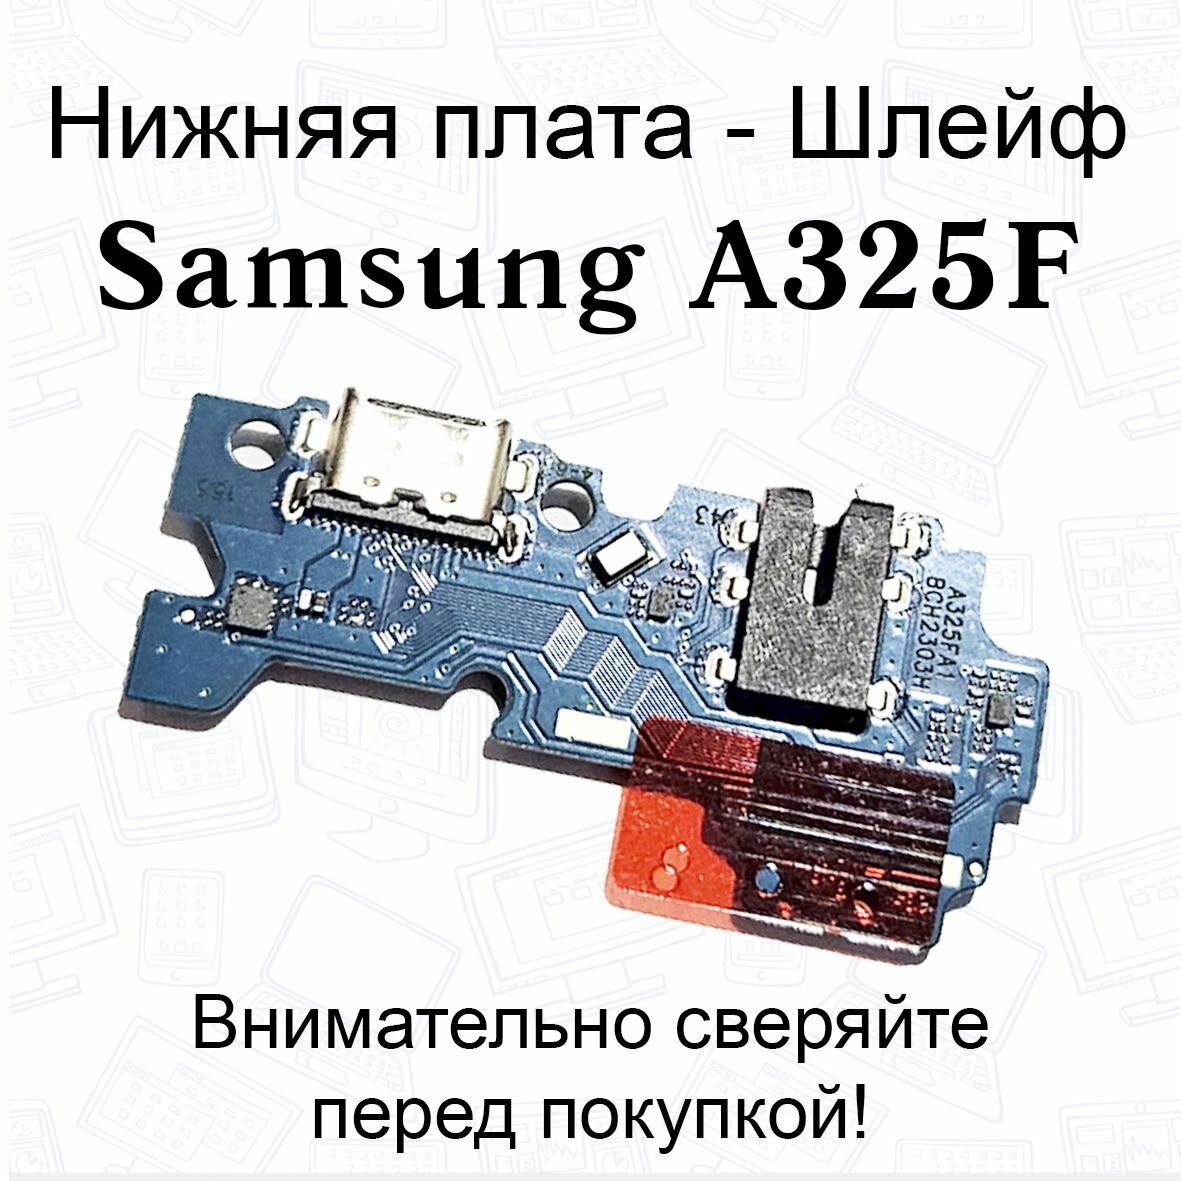 Нижняя плата/шлейфдля Samsung Galaxy A32 (A325F) системный разъем/разъем гарнитуры/микрофон OEM